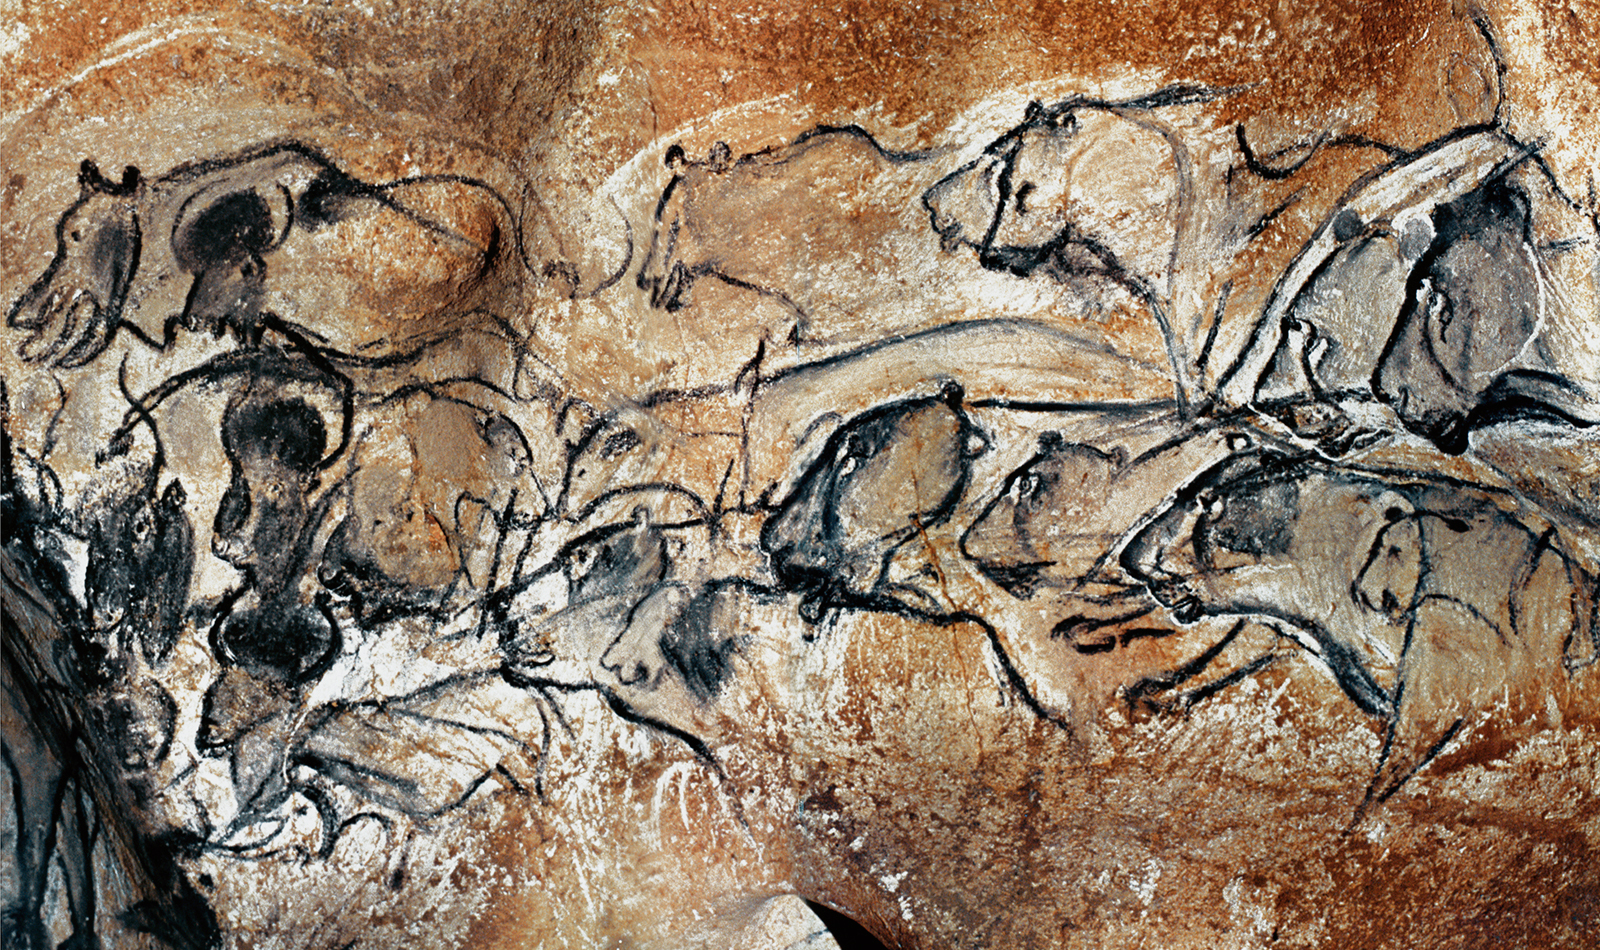 Lions Chauvet Cave Paintings Rock Art France Bradshaw Foundation